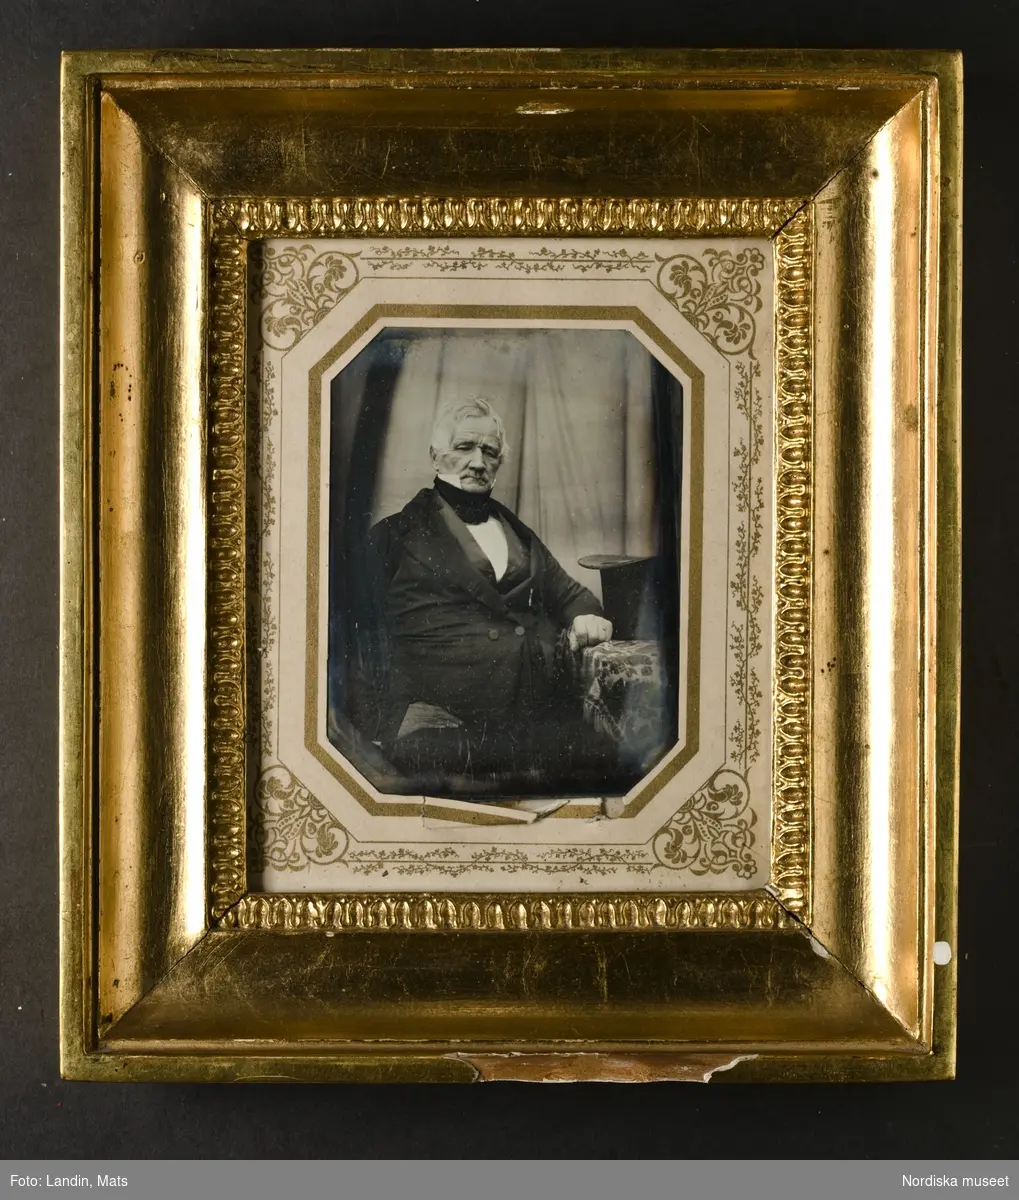 Porträtt av äldre man, knäbild, sittande, klädd i svart bonjour, mörk väst, vitt skjortbröst, vit krage med höga spetsar, svart halsduk. Lutar mot litet bord på vilket en svart cylinderhatt står. Dagerrotyp / daguerreotyp i glasad förgylld, profilerad träram, ca. 1850. På baksidan skrivet: "Ebba/Mina". Nordiska museet inv.nr 190360
-
Portrait of an unidentified elderly man. Quarter-plate daguerreotype in gilt wood frame with ornamented paper mat, c. 1850.